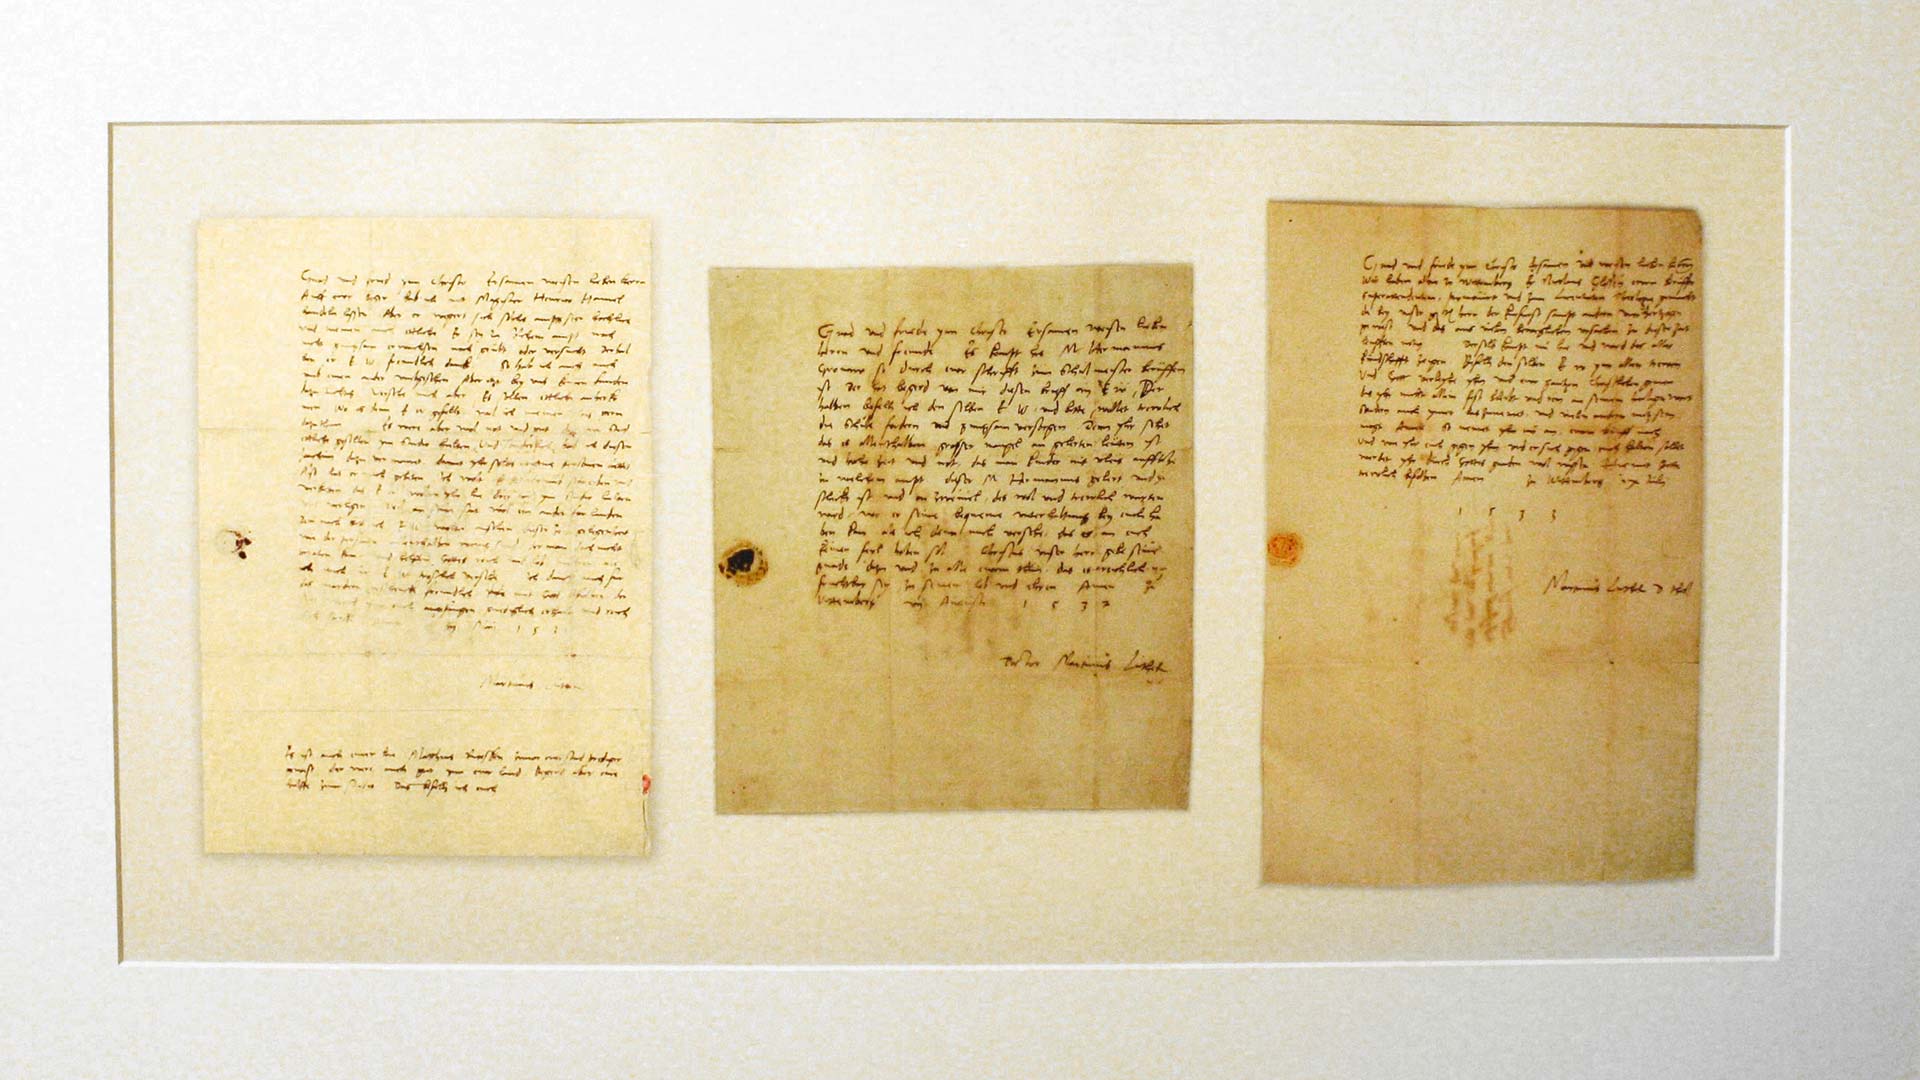 Eingerahmt die Kopien dreier Briefe Luthers an seine Glaubensbrüder im damaligen Reval.